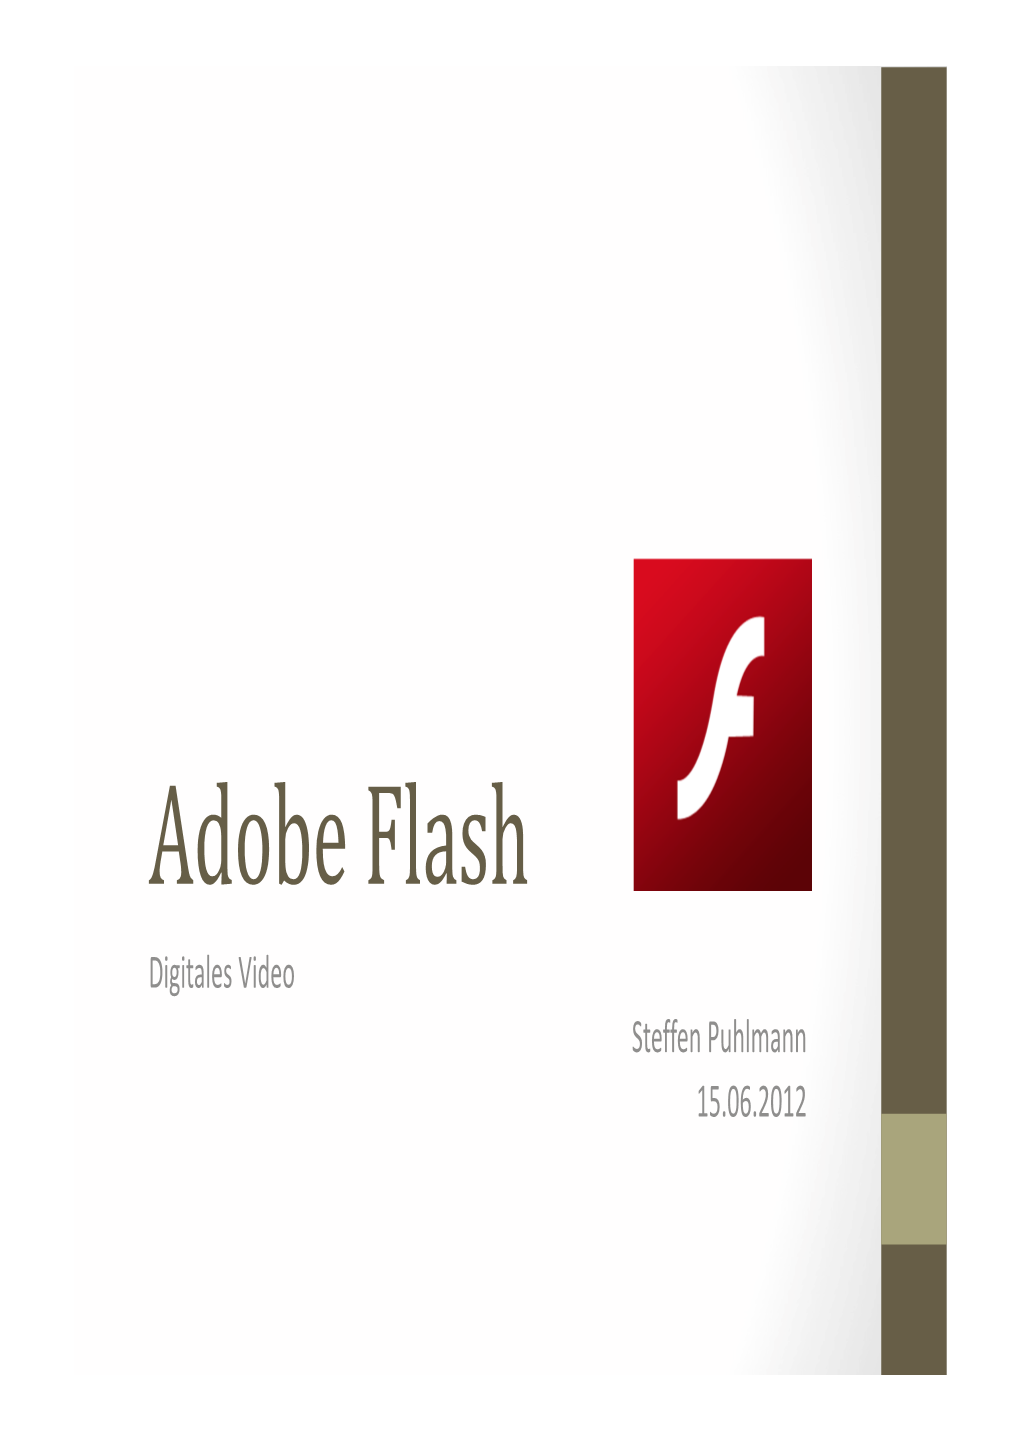 Adobe Flash Digitales Video Steffen Puhlmann 15.06.2012 Gliederung